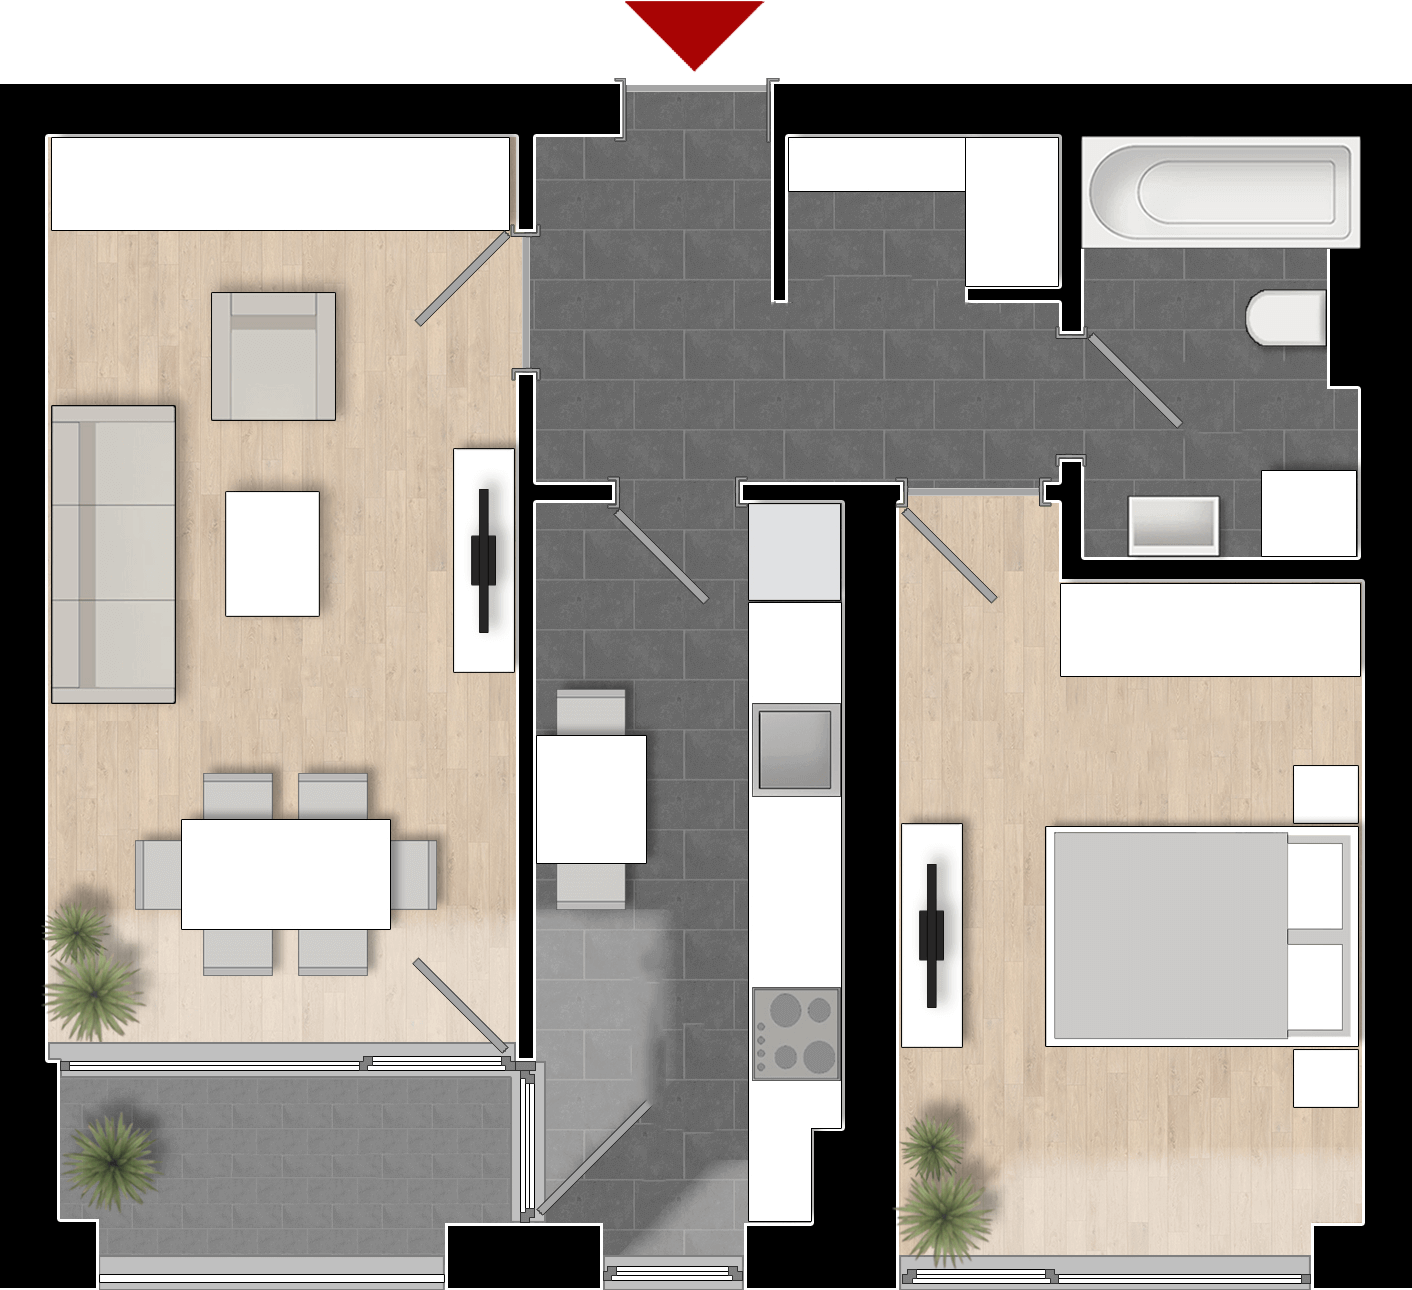  Apartament 702, Tip de apartament 2A cu 2 camere 